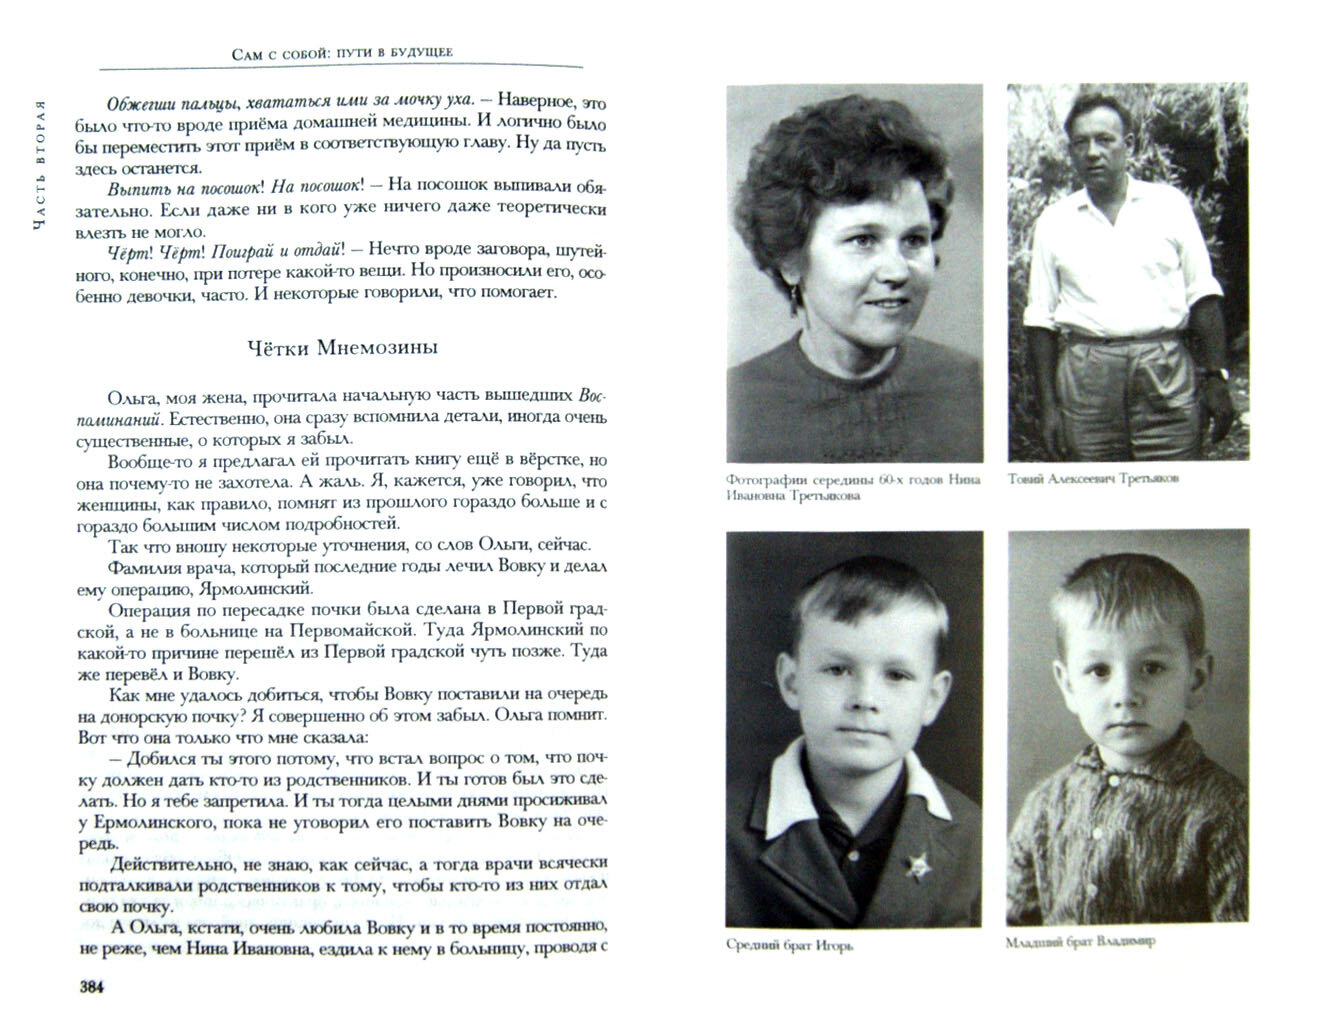 Детство и отрочество. Ч. Княжекозловский переулок (1964-1968). Ч.3. Пионерский лагерь - фото №2